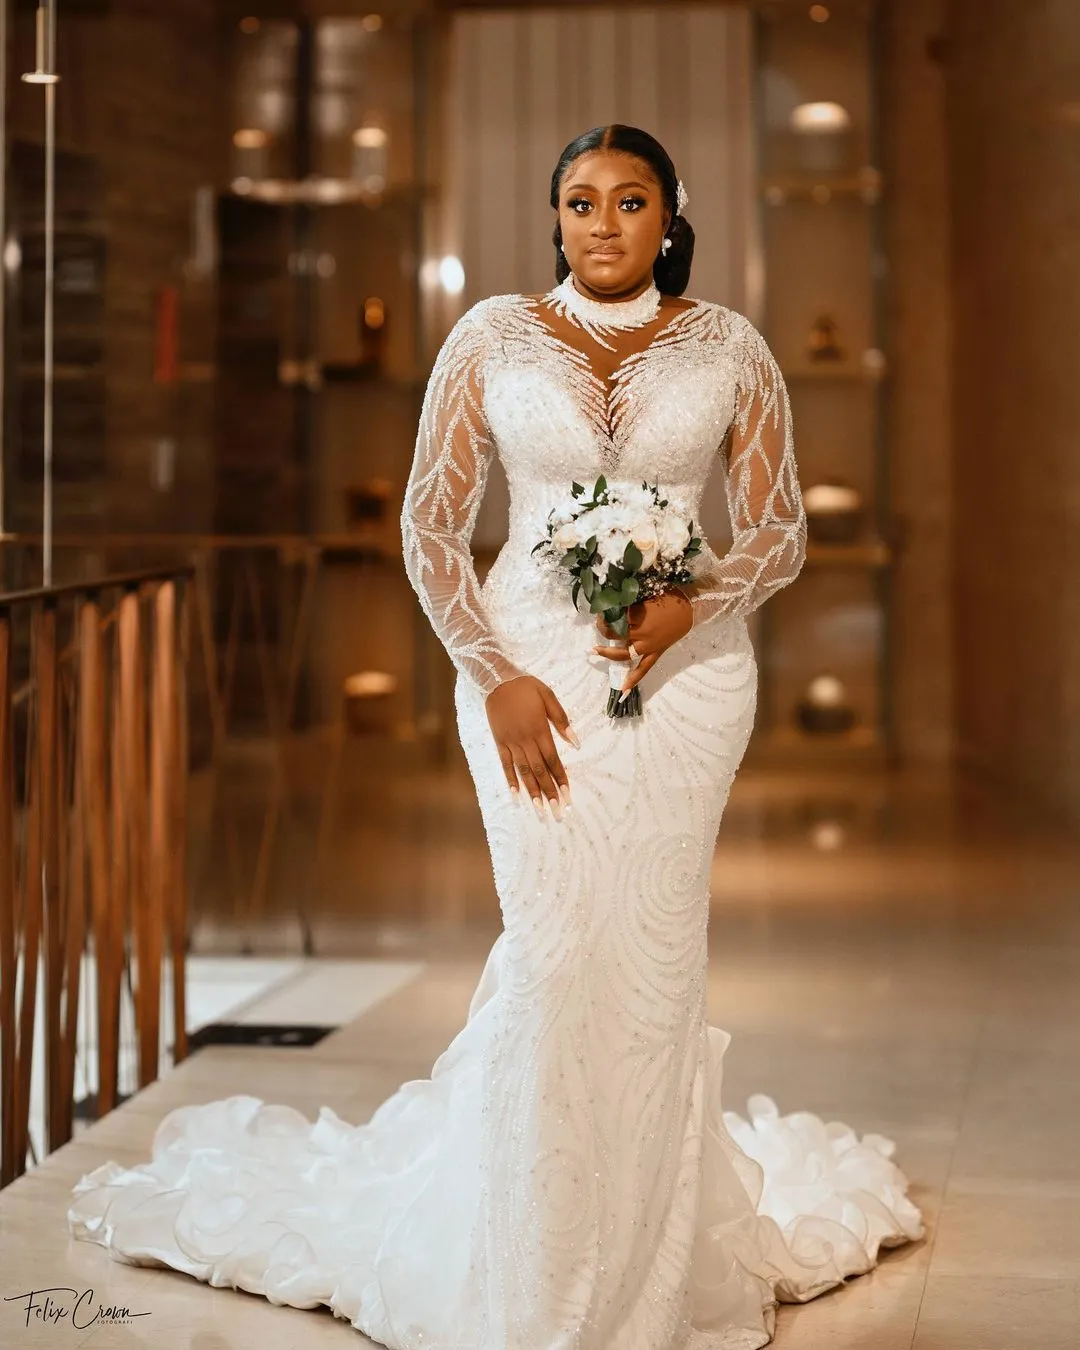 Arabic One Shoulder Wedding Dresses Plus Size Feathers Appliqued Bridal  Gowns Side Split Elegant Robes De Mariée From Clothesshop8, $140.14